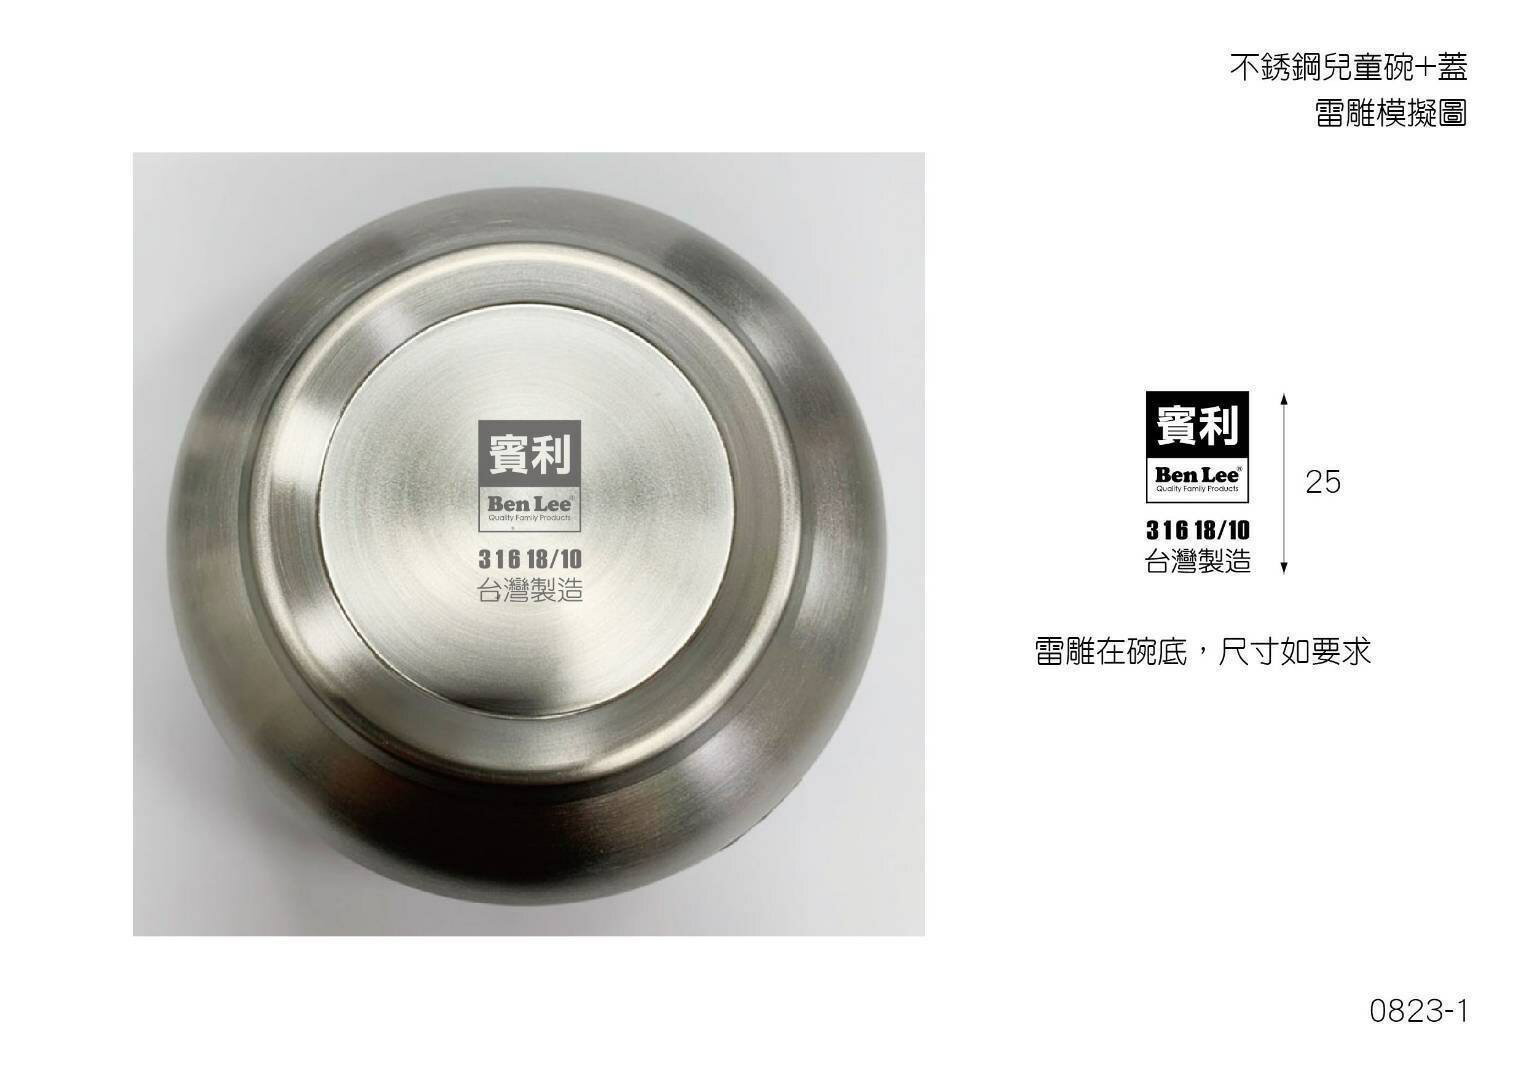 316兒童隔熱碗 台灣製造卡通碗 兒童碗 隔熱碗 不鏽鋼碗 湯碗 防燙碗 賓利 卡通隔熱碗 兒童餐具(伊凡卡百貨)